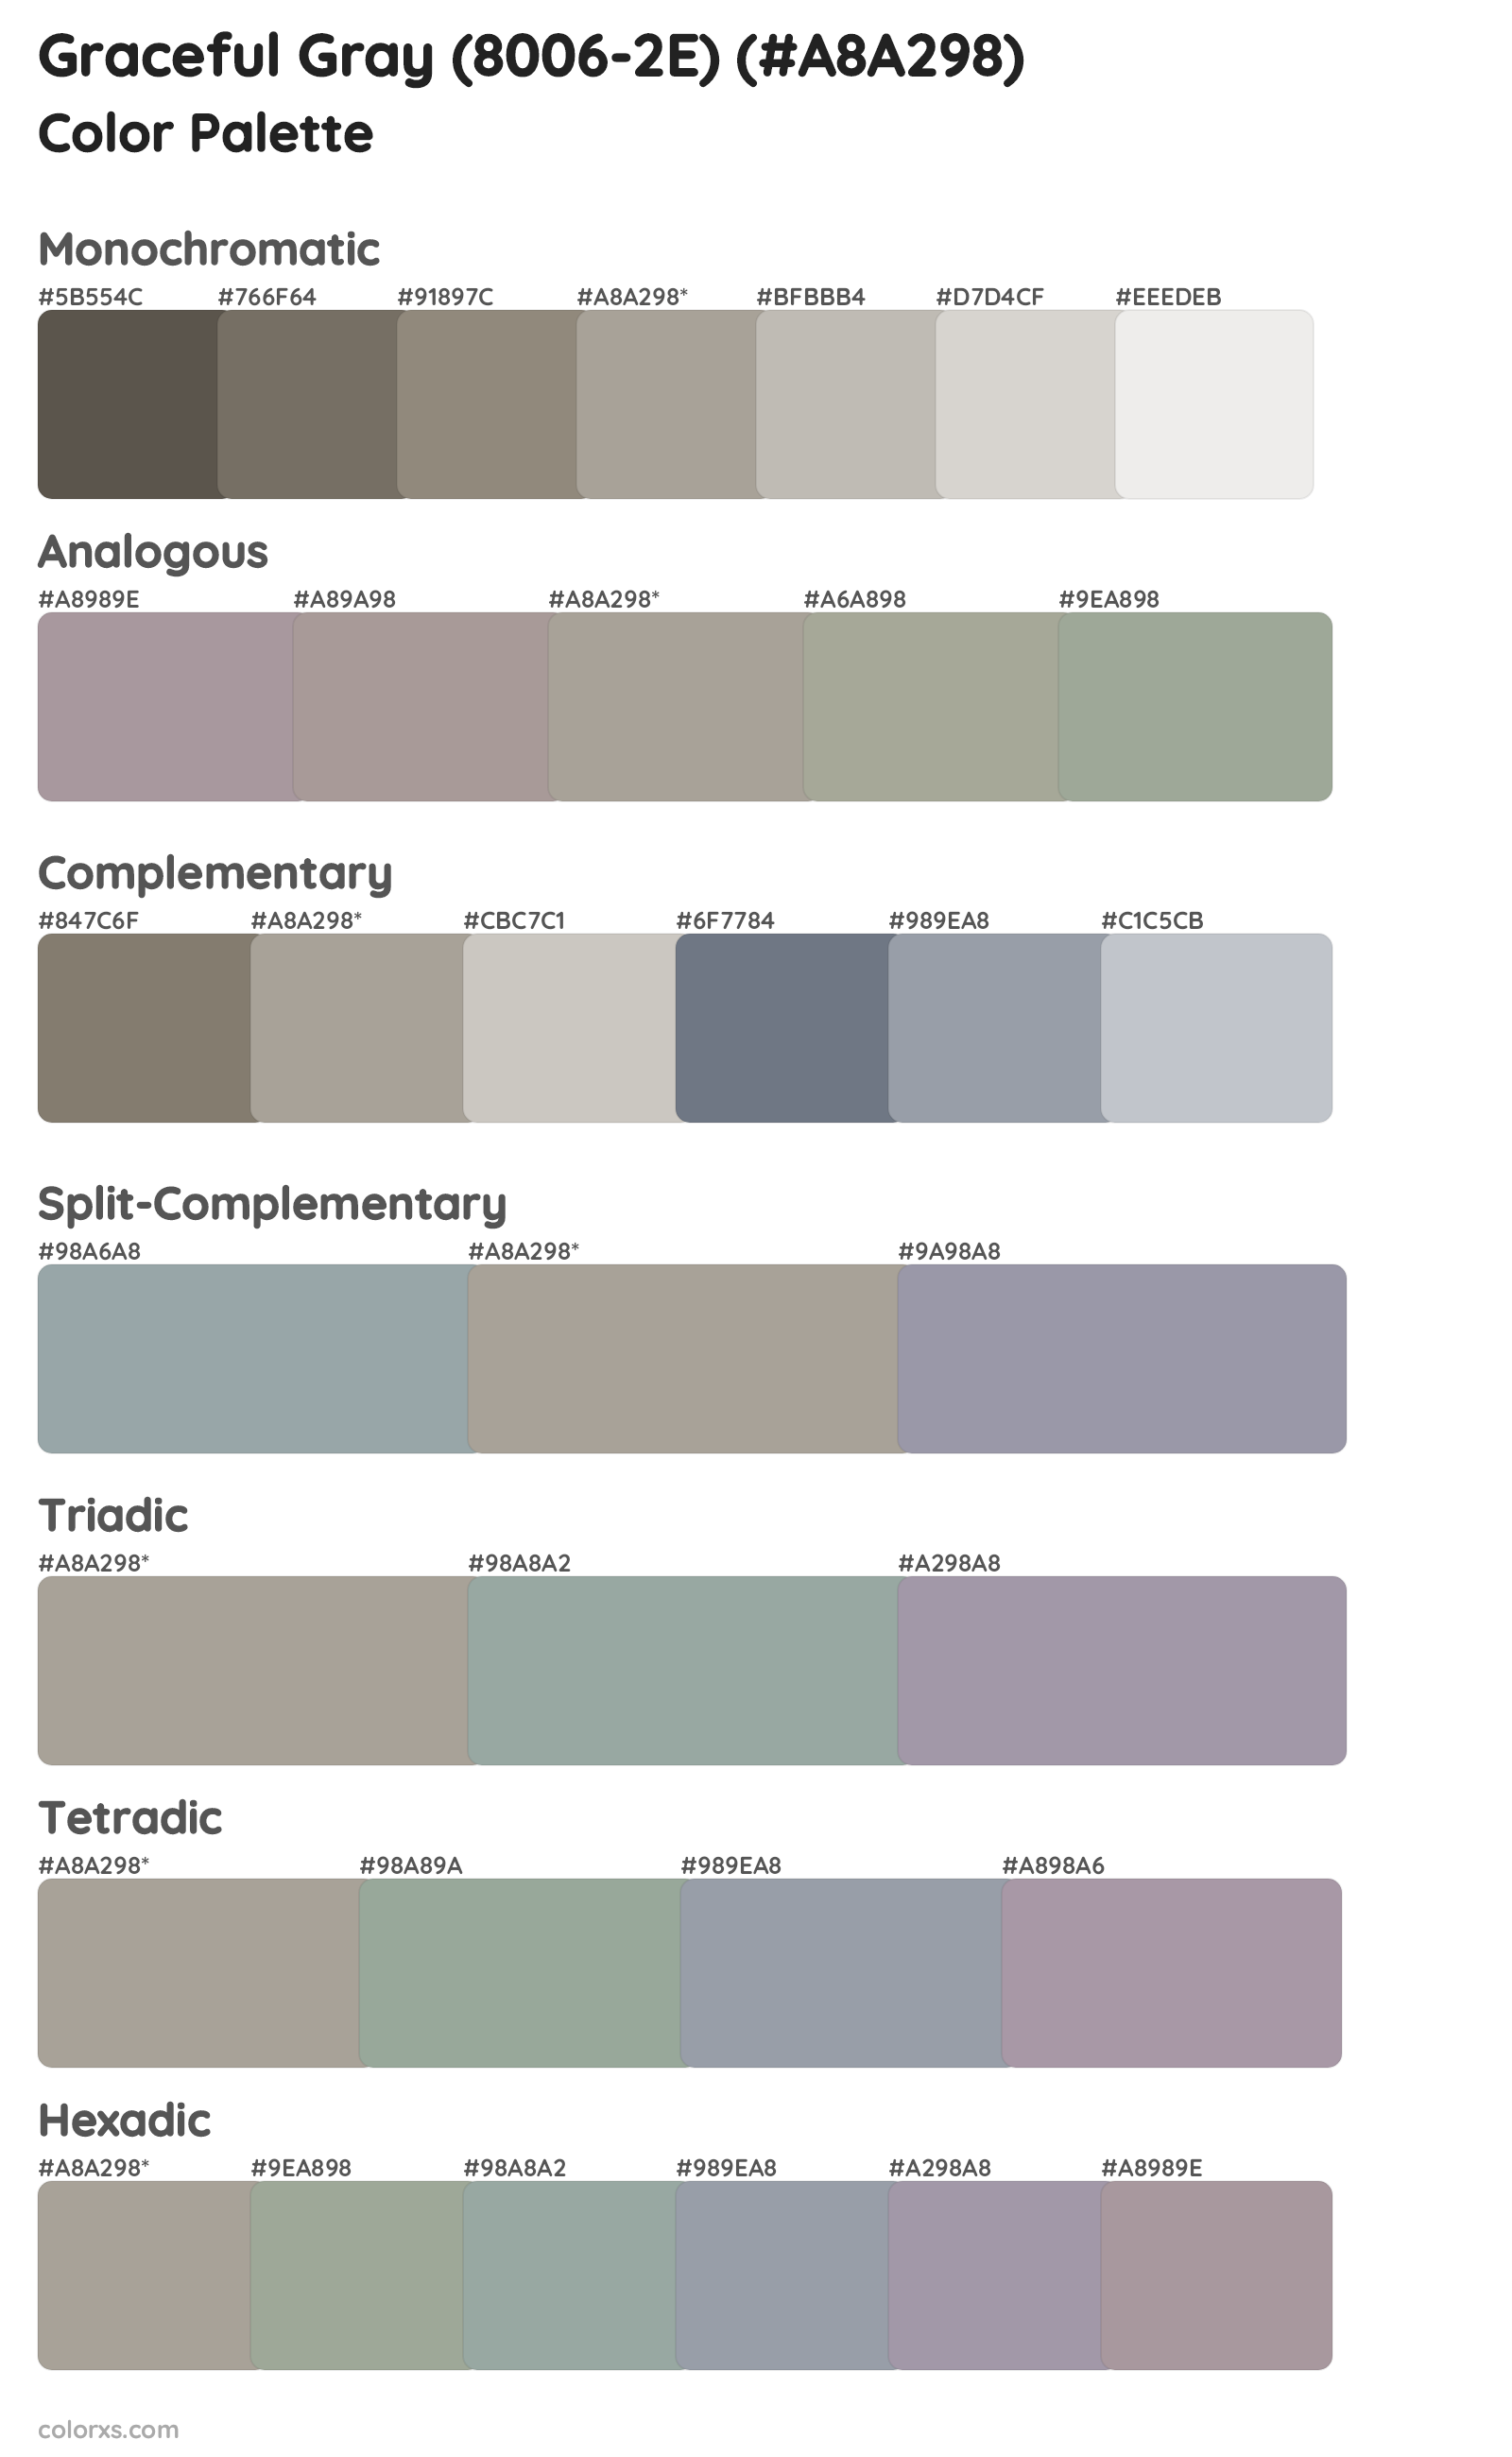 Graceful Gray (8006-2E) Color Scheme Palettes